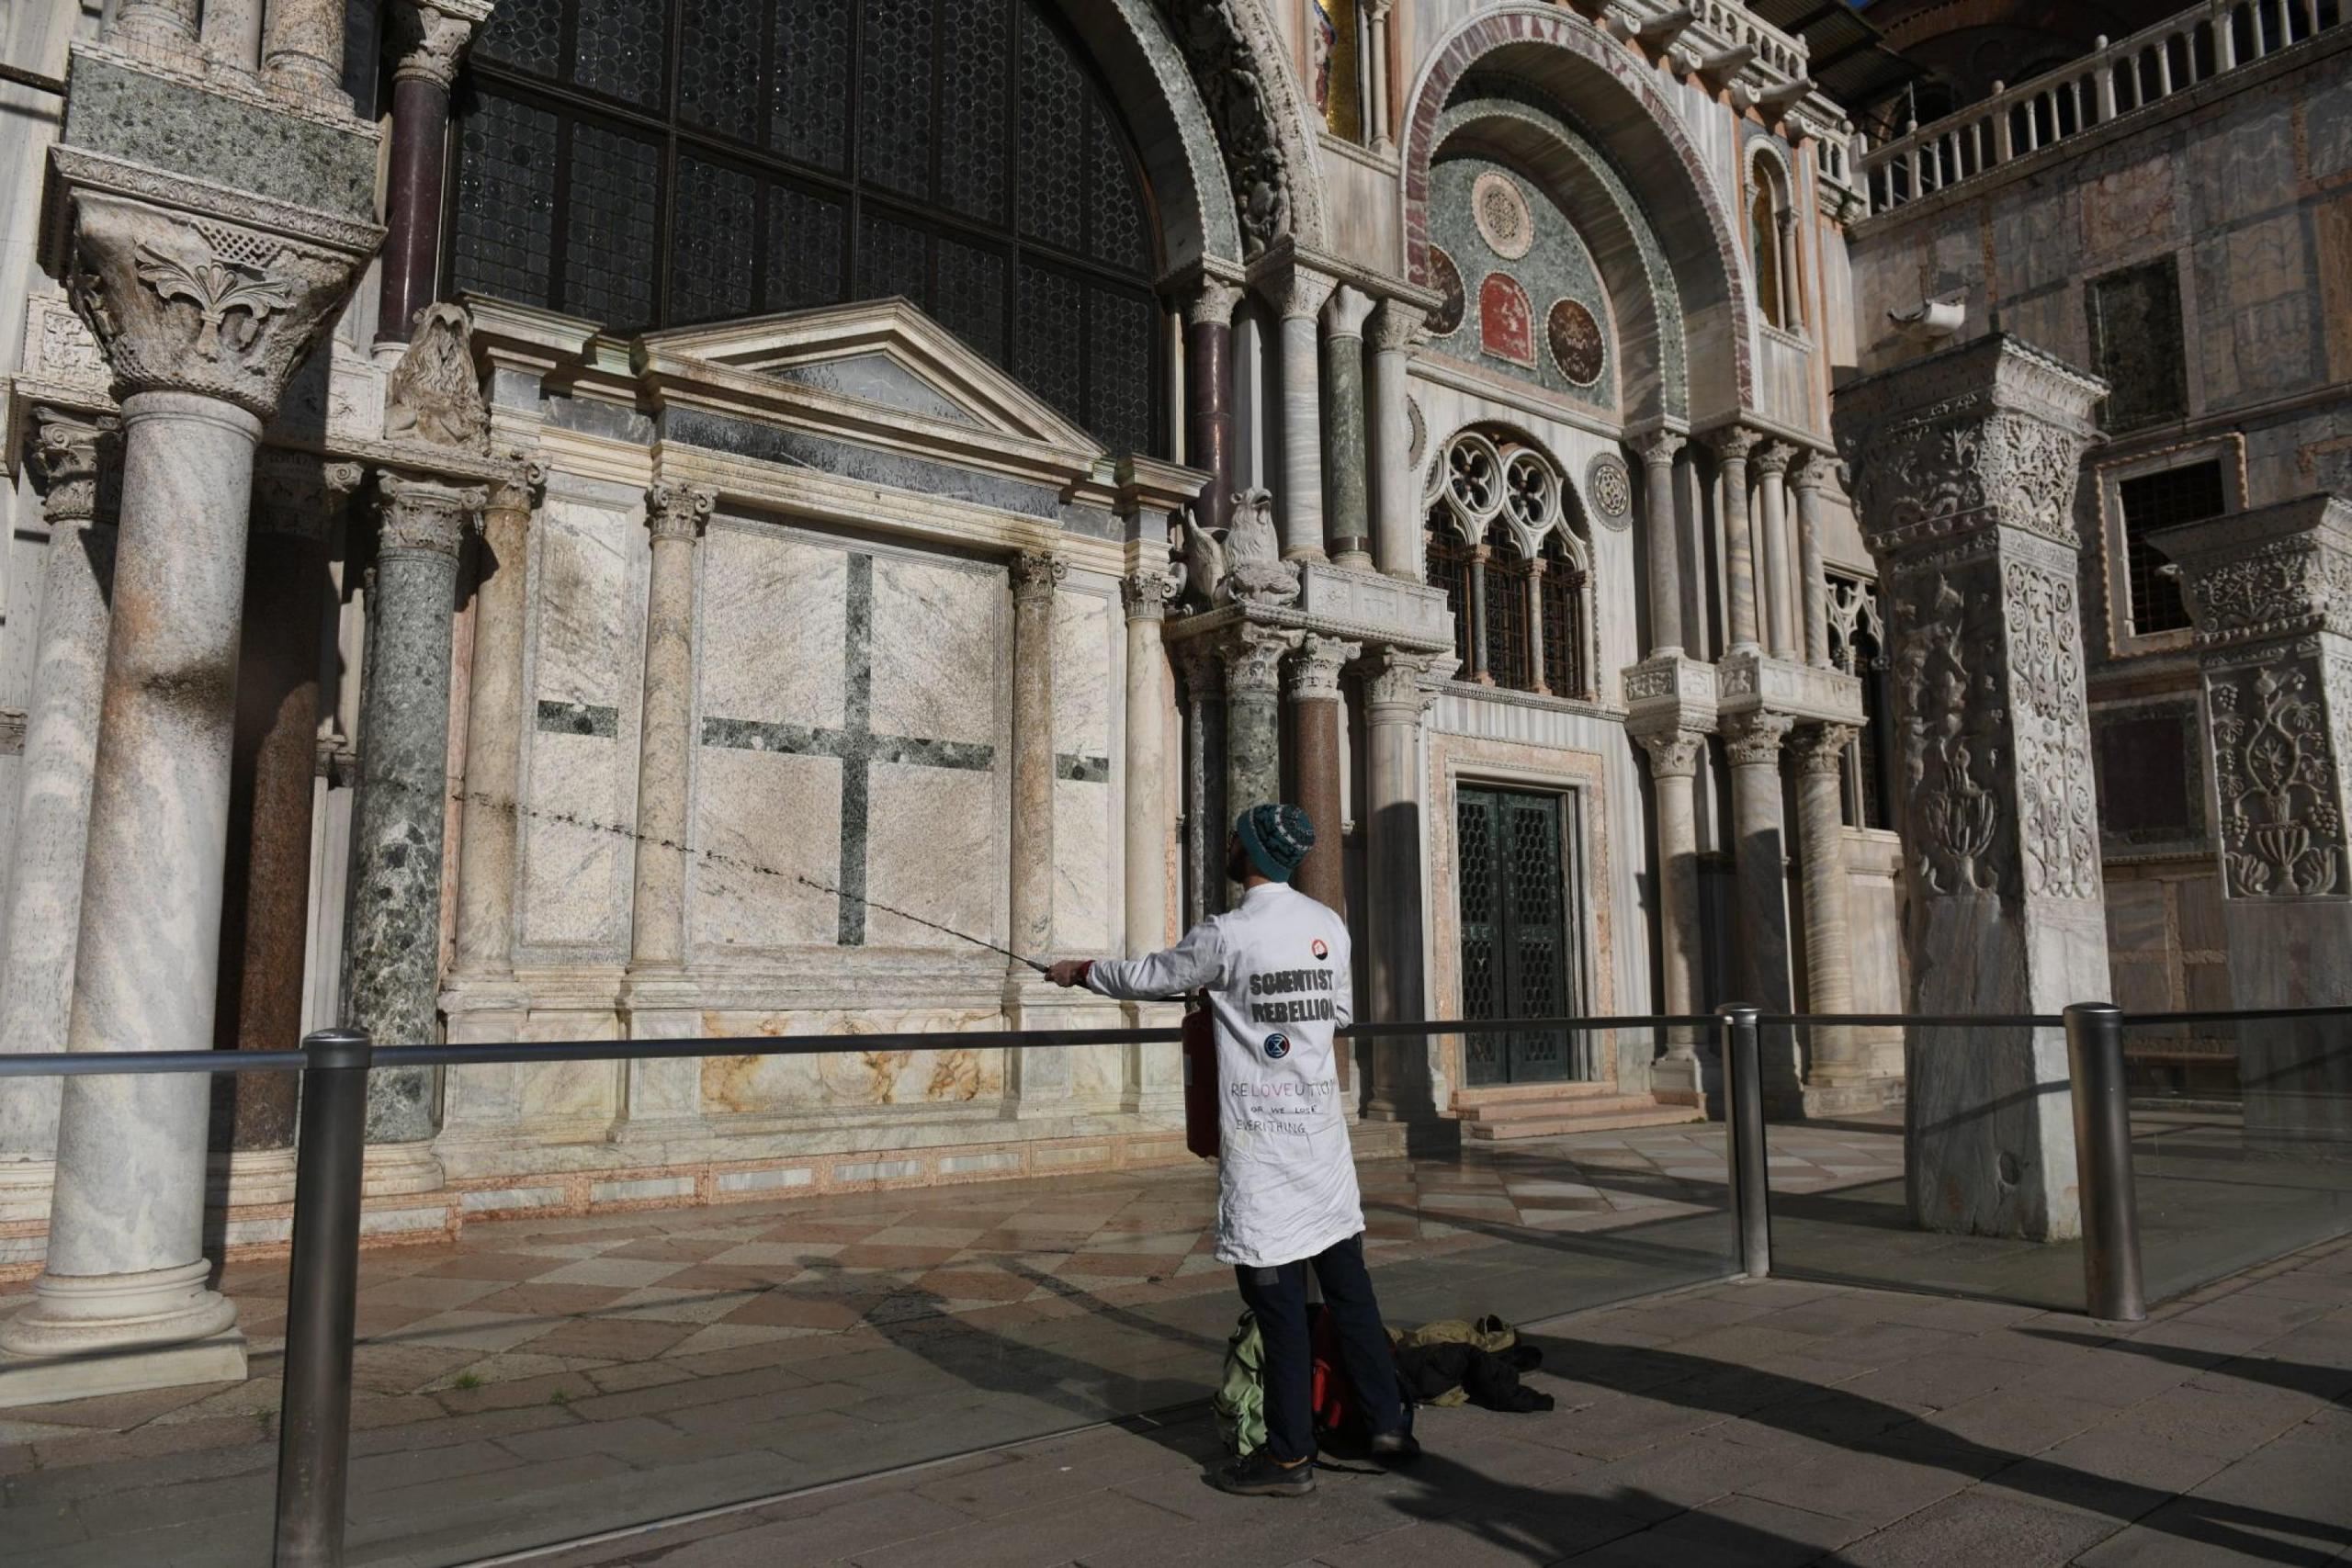 Un activista climático rocía barro en el exterior de la Basílica de San Marcos durante una protesta en Venecia, Italia, el 7 de diciembre de 2023. Los manifestantes utilizaron extintores para rociar barro líquido en las paredes de la iglesia, antes desplegando una pancarta que decía "fondo de reparación". (Protestas, Italia, Niza, Venecia) (EFE/EPA/EDOARDO FIORETTO)